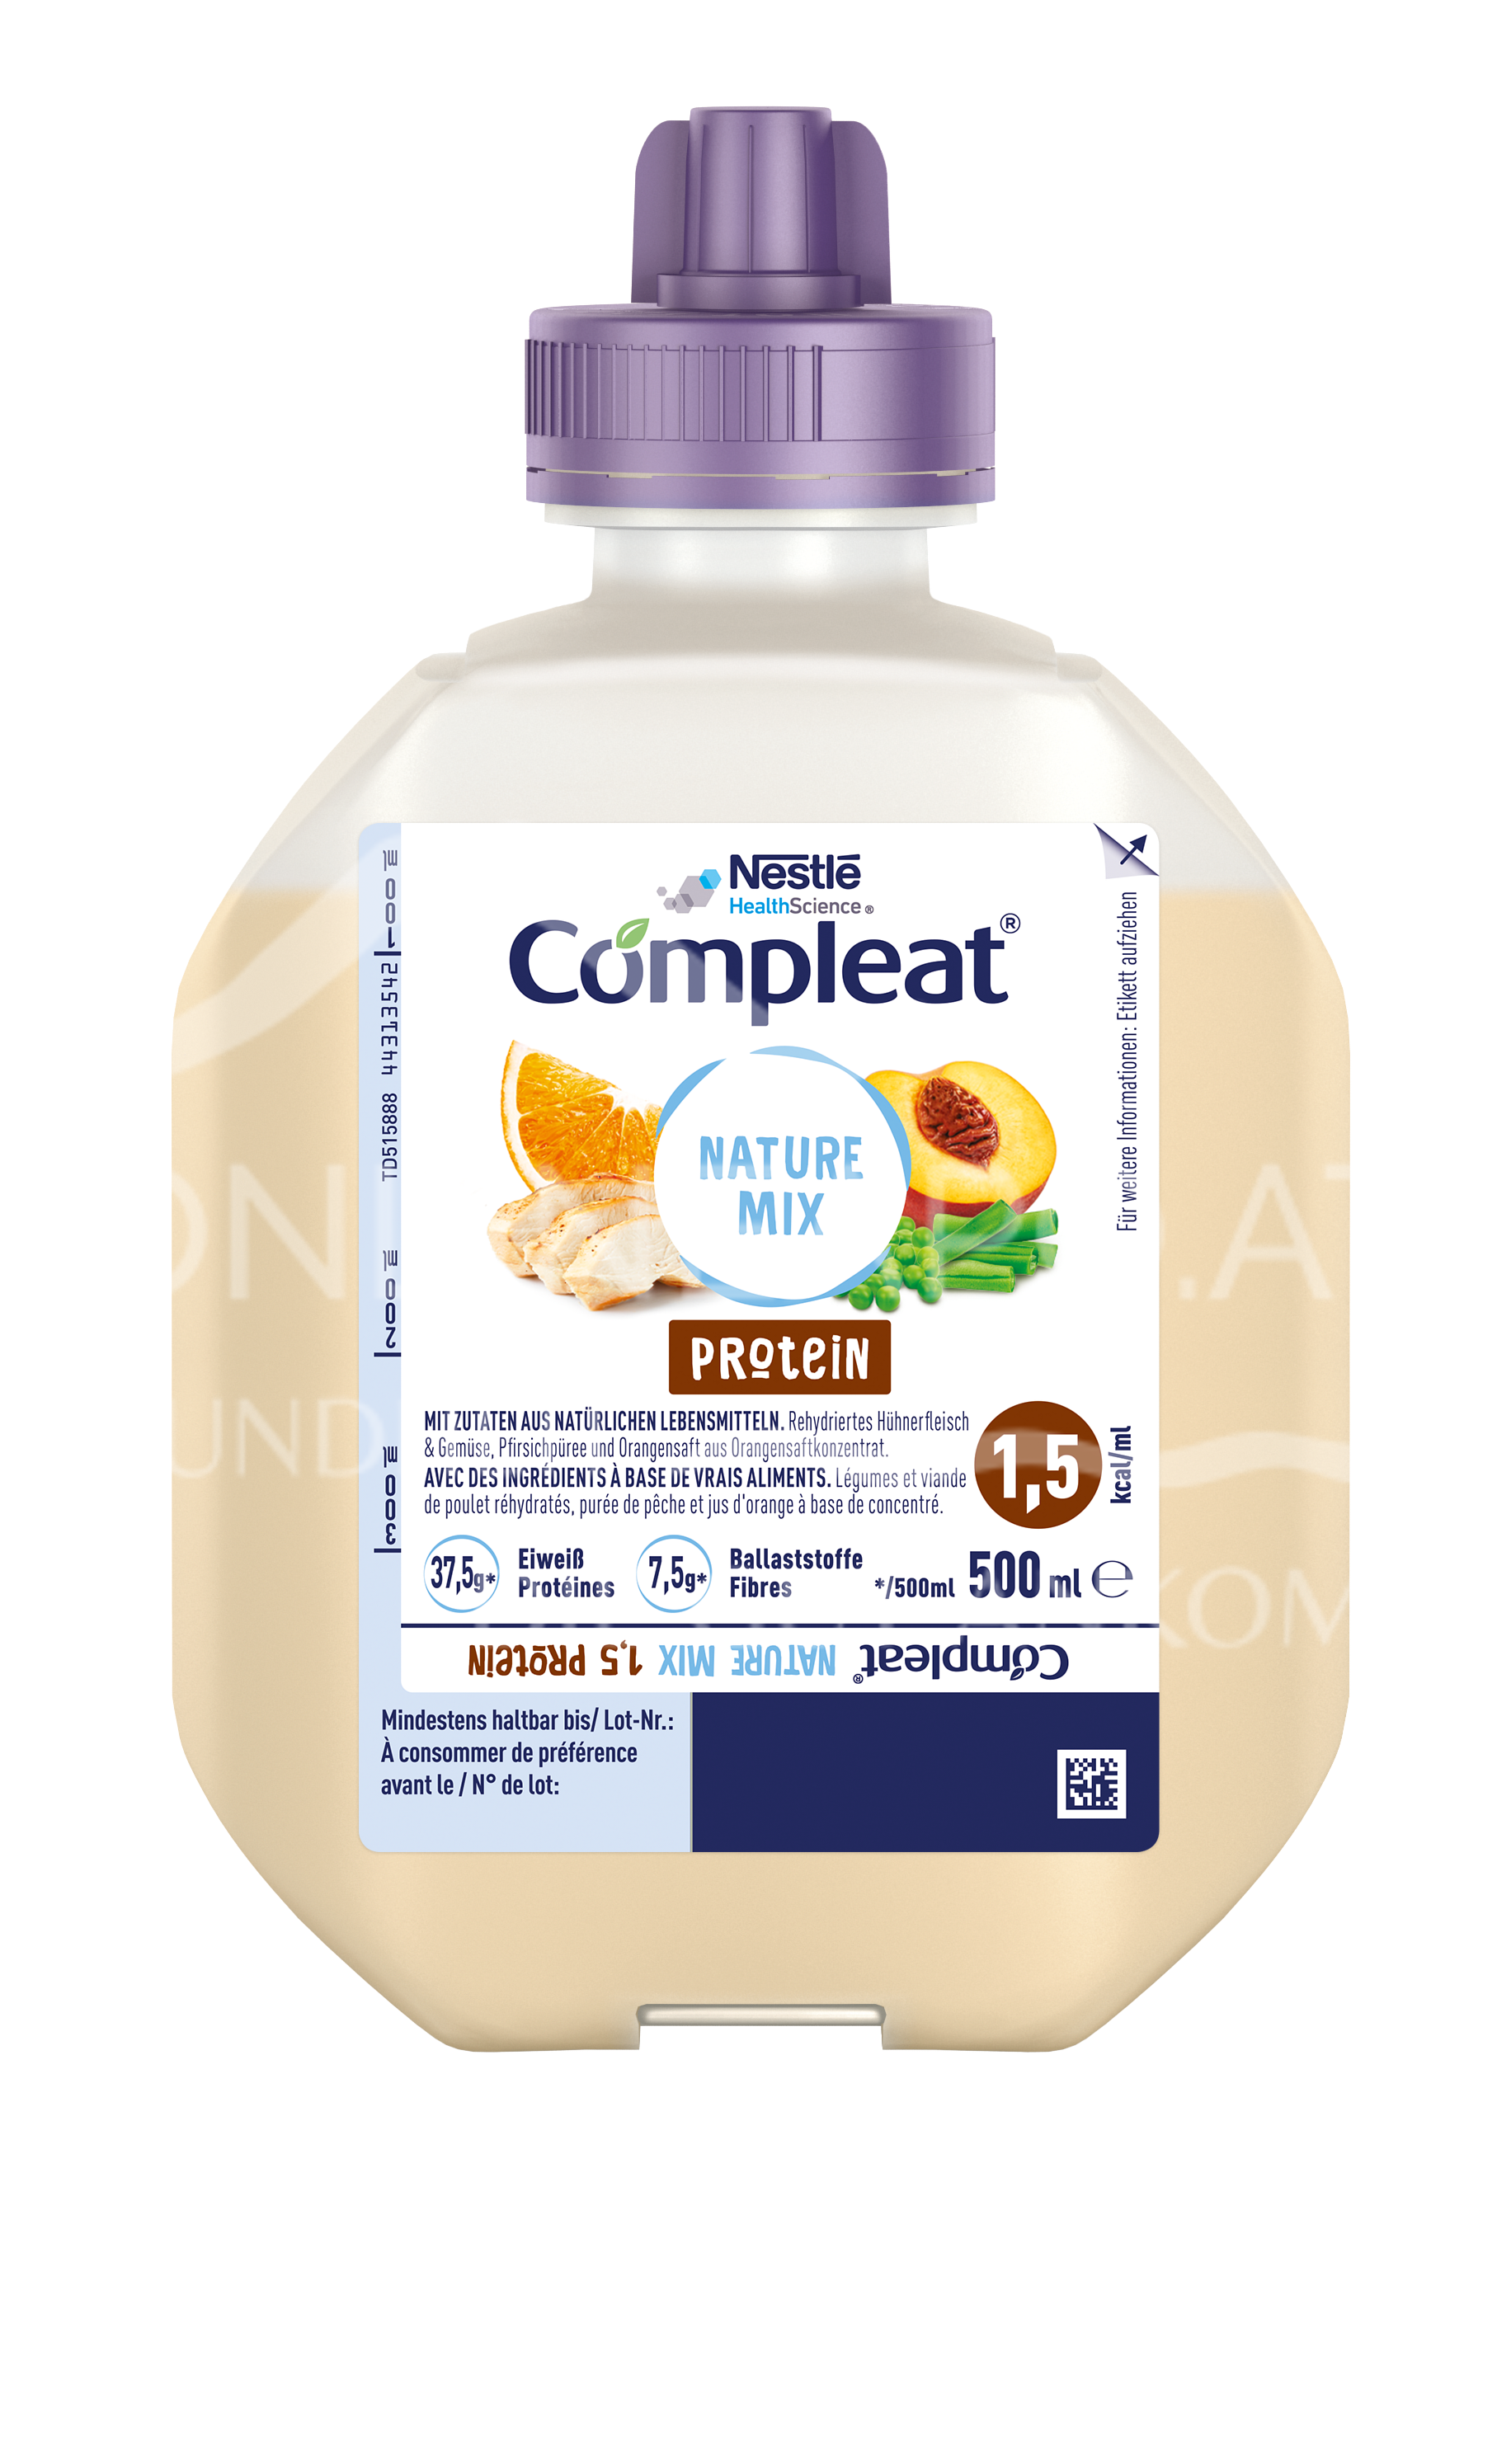 Nestlé Compleat® Nature Mix 1.5 Protein 500 ml Smartflex